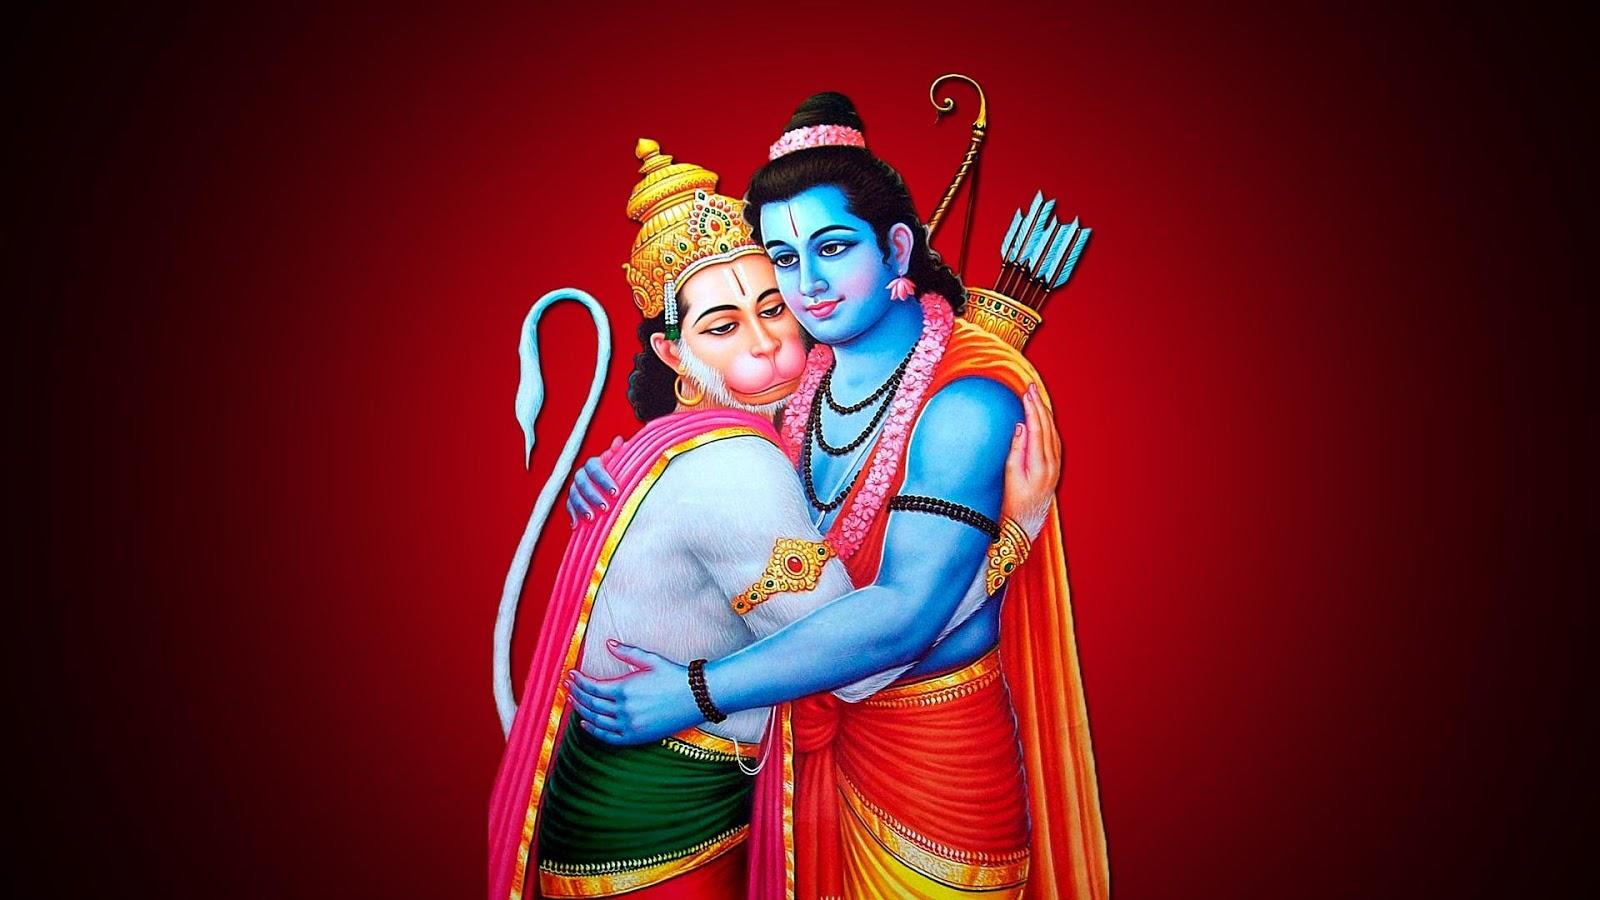 hanuman ji 4k wallpaper for iphone | Hanuman images